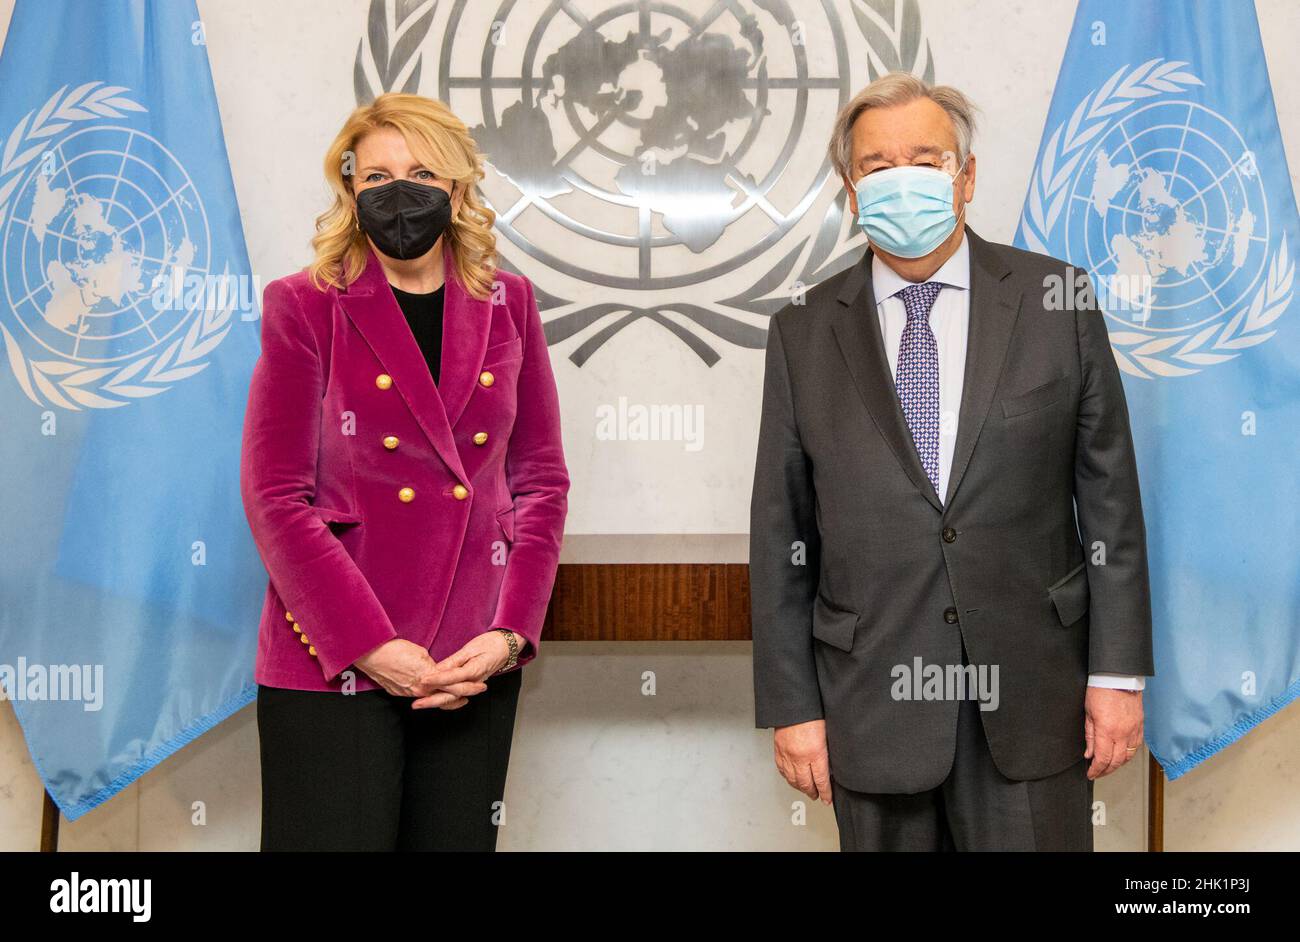 (220201) -- NACIONES UNIDAS, 1 de febrero de 2022 (Xinhua) -- El Secretario General de la ONU, Antonio Guterres (R), presenta una foto con Catherine Russell de los Estados Unidos en su juramento como nueva directora ejecutiva del Fondo de la ONU para la Infancia en la sede de la ONU en Nueva York, el 1 de febrero de 2022. Catherine Russell, de los Estados Unidos, asumió el cargo el martes como la nueva directora ejecutiva del Fondo de las Naciones Unidas para la Infancia (UNICEF), convirtiéndose en la cuarta mujer en dirigir la organización. (Mark Garten/Foto ONU/Folleto via Xinhua) Foto de stock